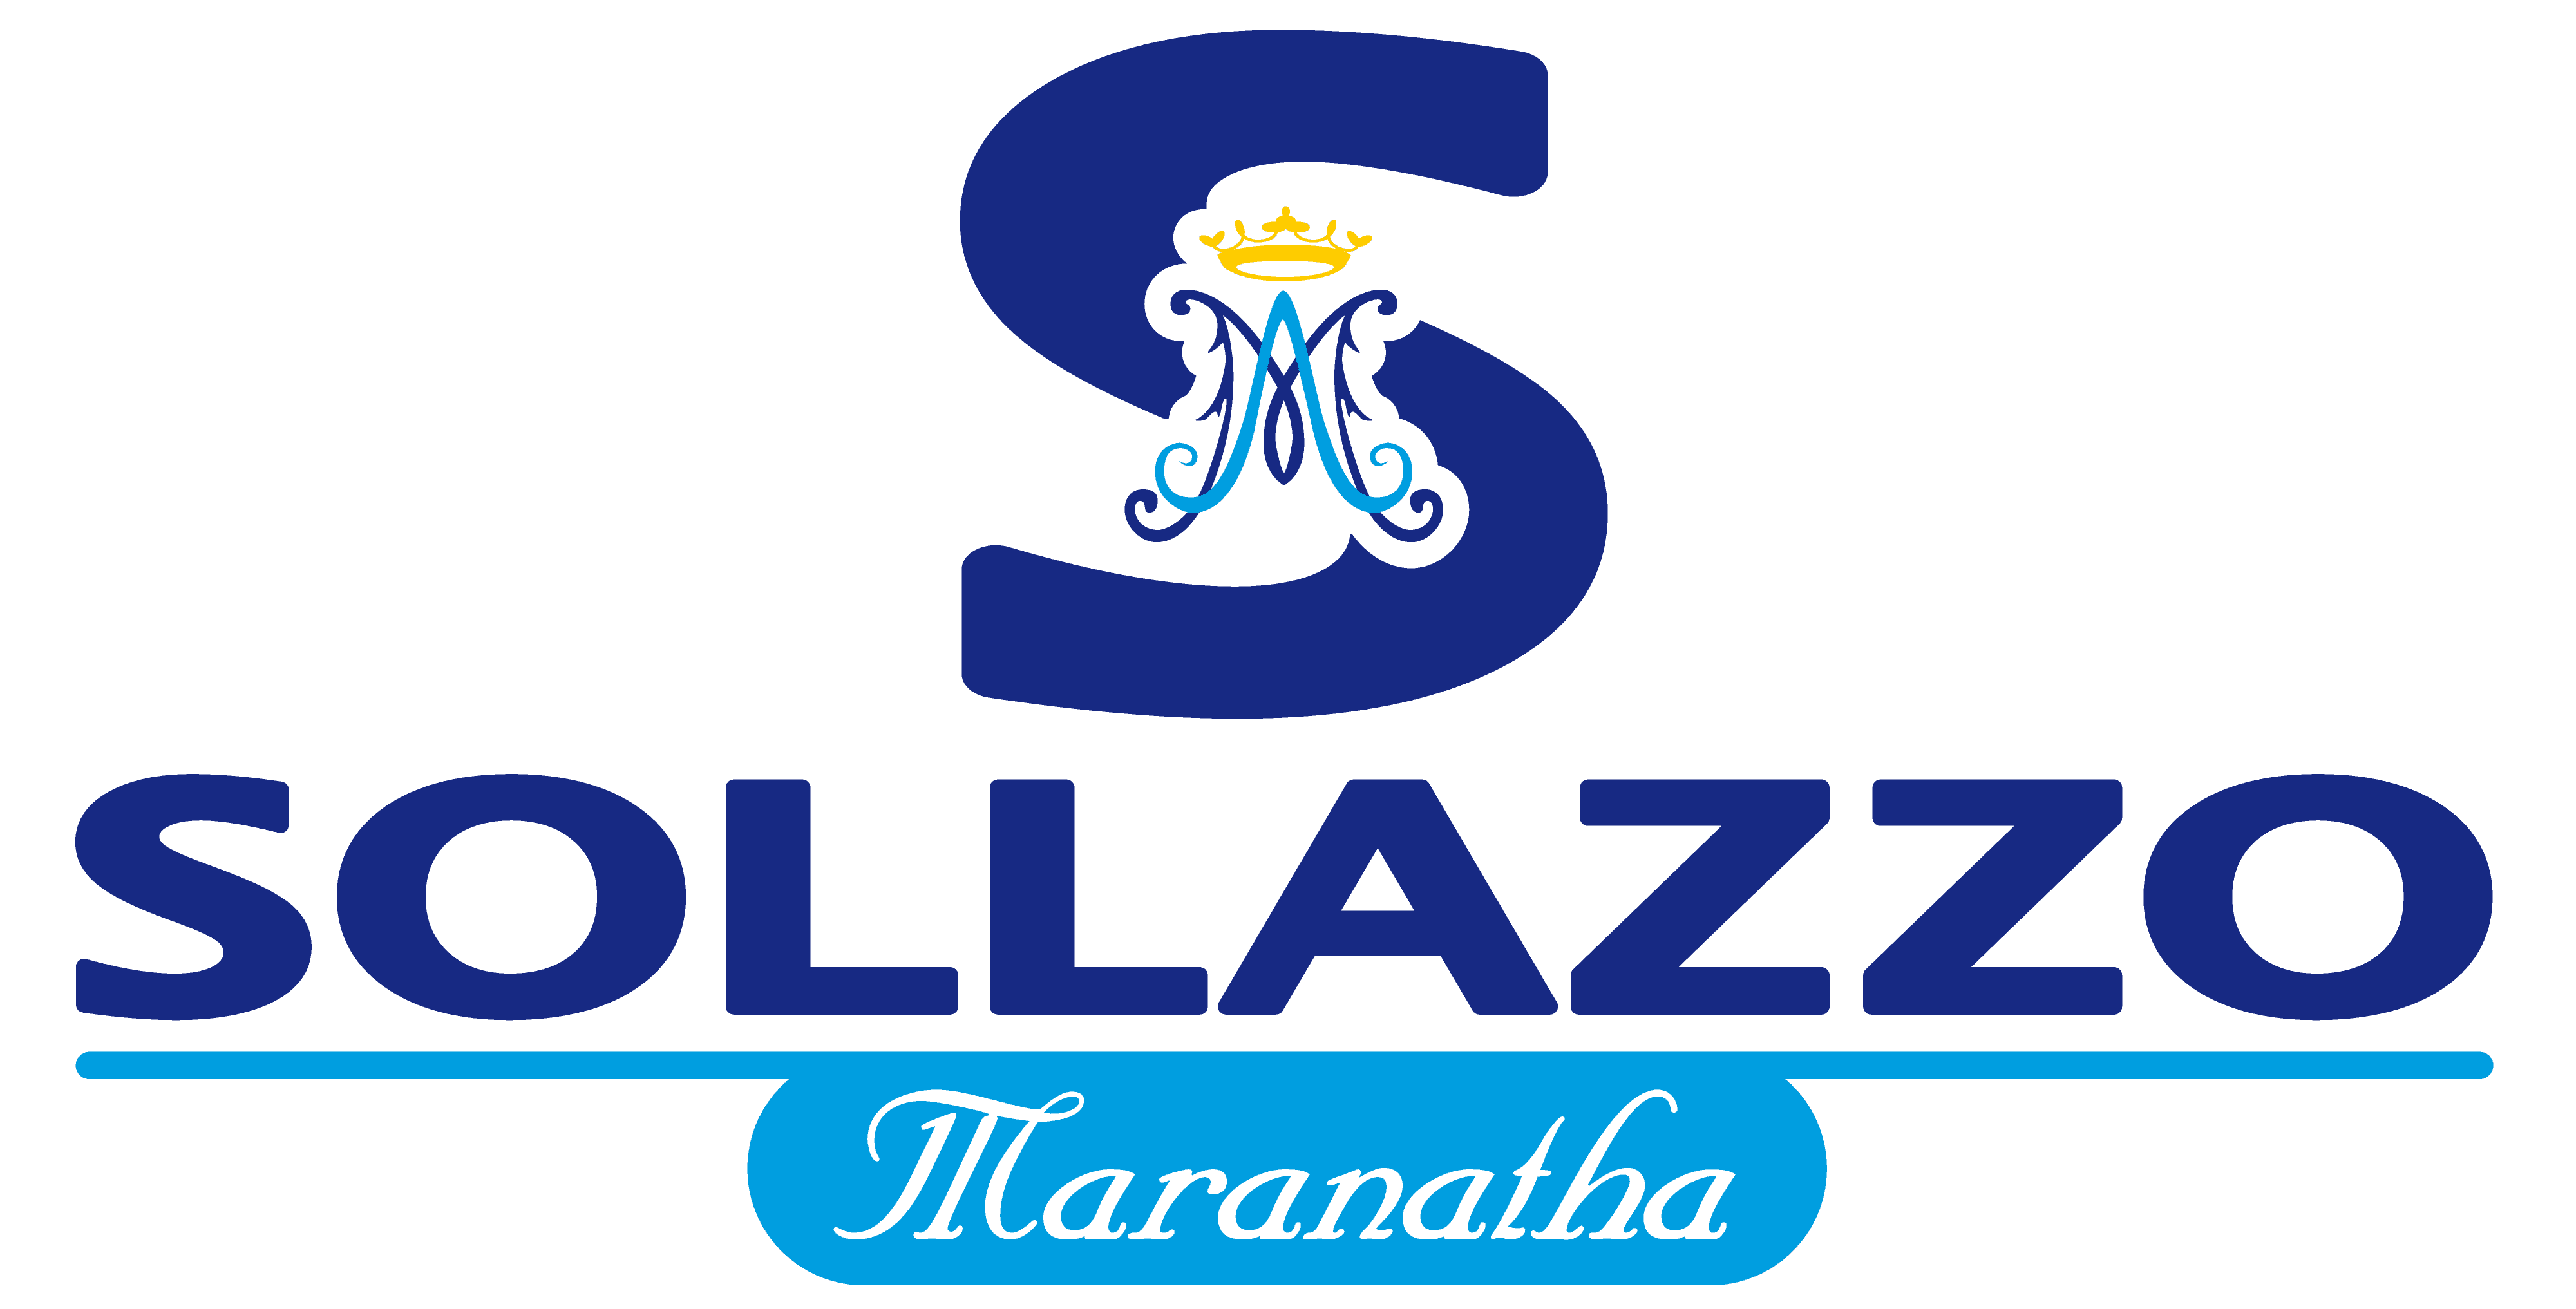 Sollazzo Maranatha - Arredi Liturgici